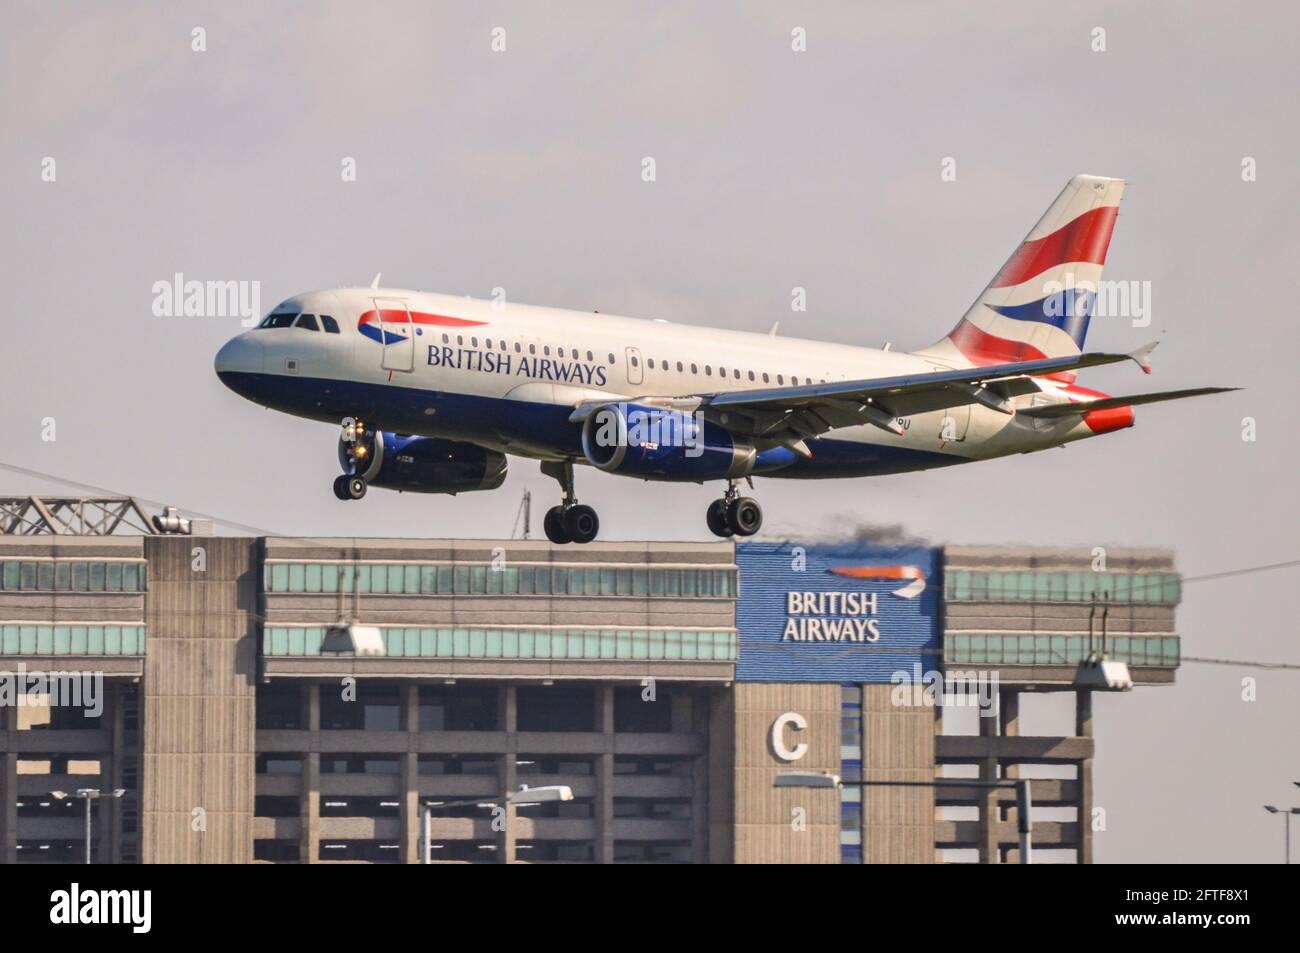 British Airways Airbus A319 aereo jet G-EUPU atterrando all'aeroporto Heathrow di Londra, Regno Unito, sopra l'hangar della base di manutenzione della British Airways Foto Stock